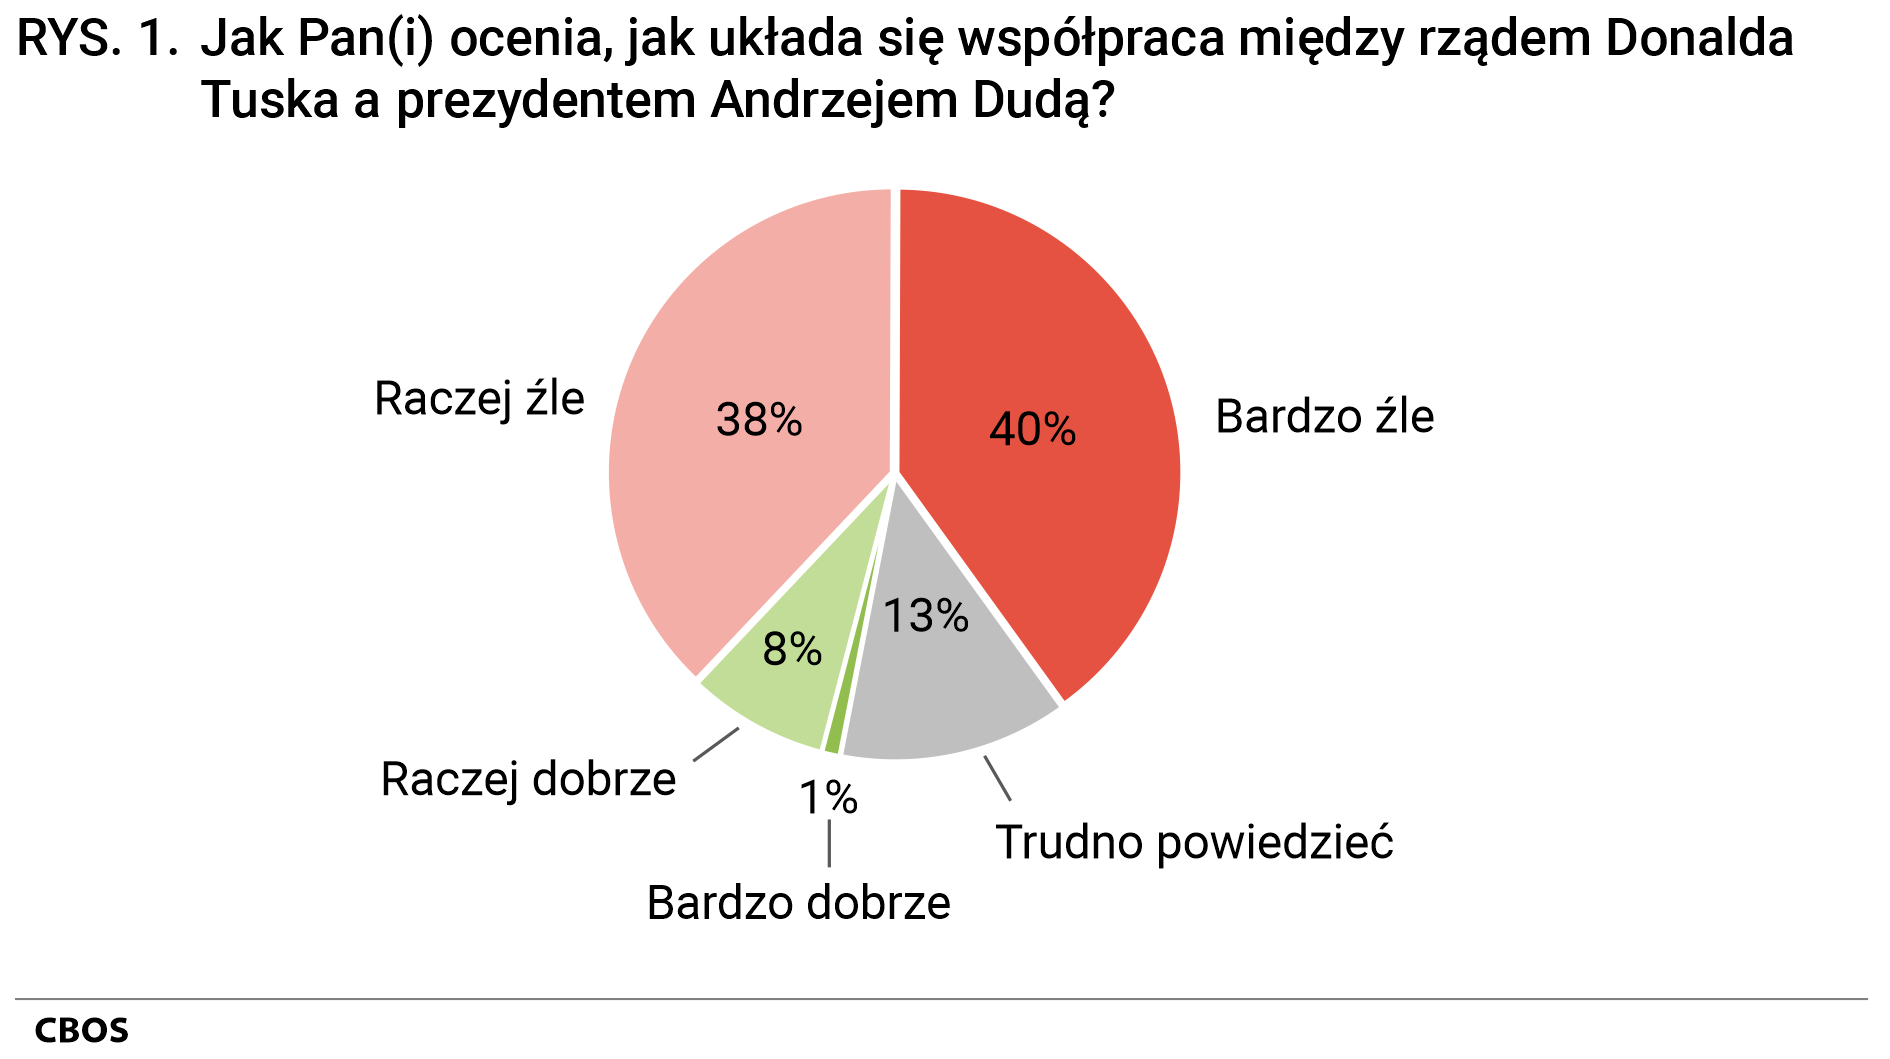 Rysunek 1 Jak Pan(Pani) ocenia, jak układa się współpraca między rządem Donalda Tuska a prezydentem Andrzejem Dudą? Bardzo dobrze 1%, Raczej dobrze 8%, Raczej źle 38%, Bardzo źle 40%, Trudno powiedzieć 13%.